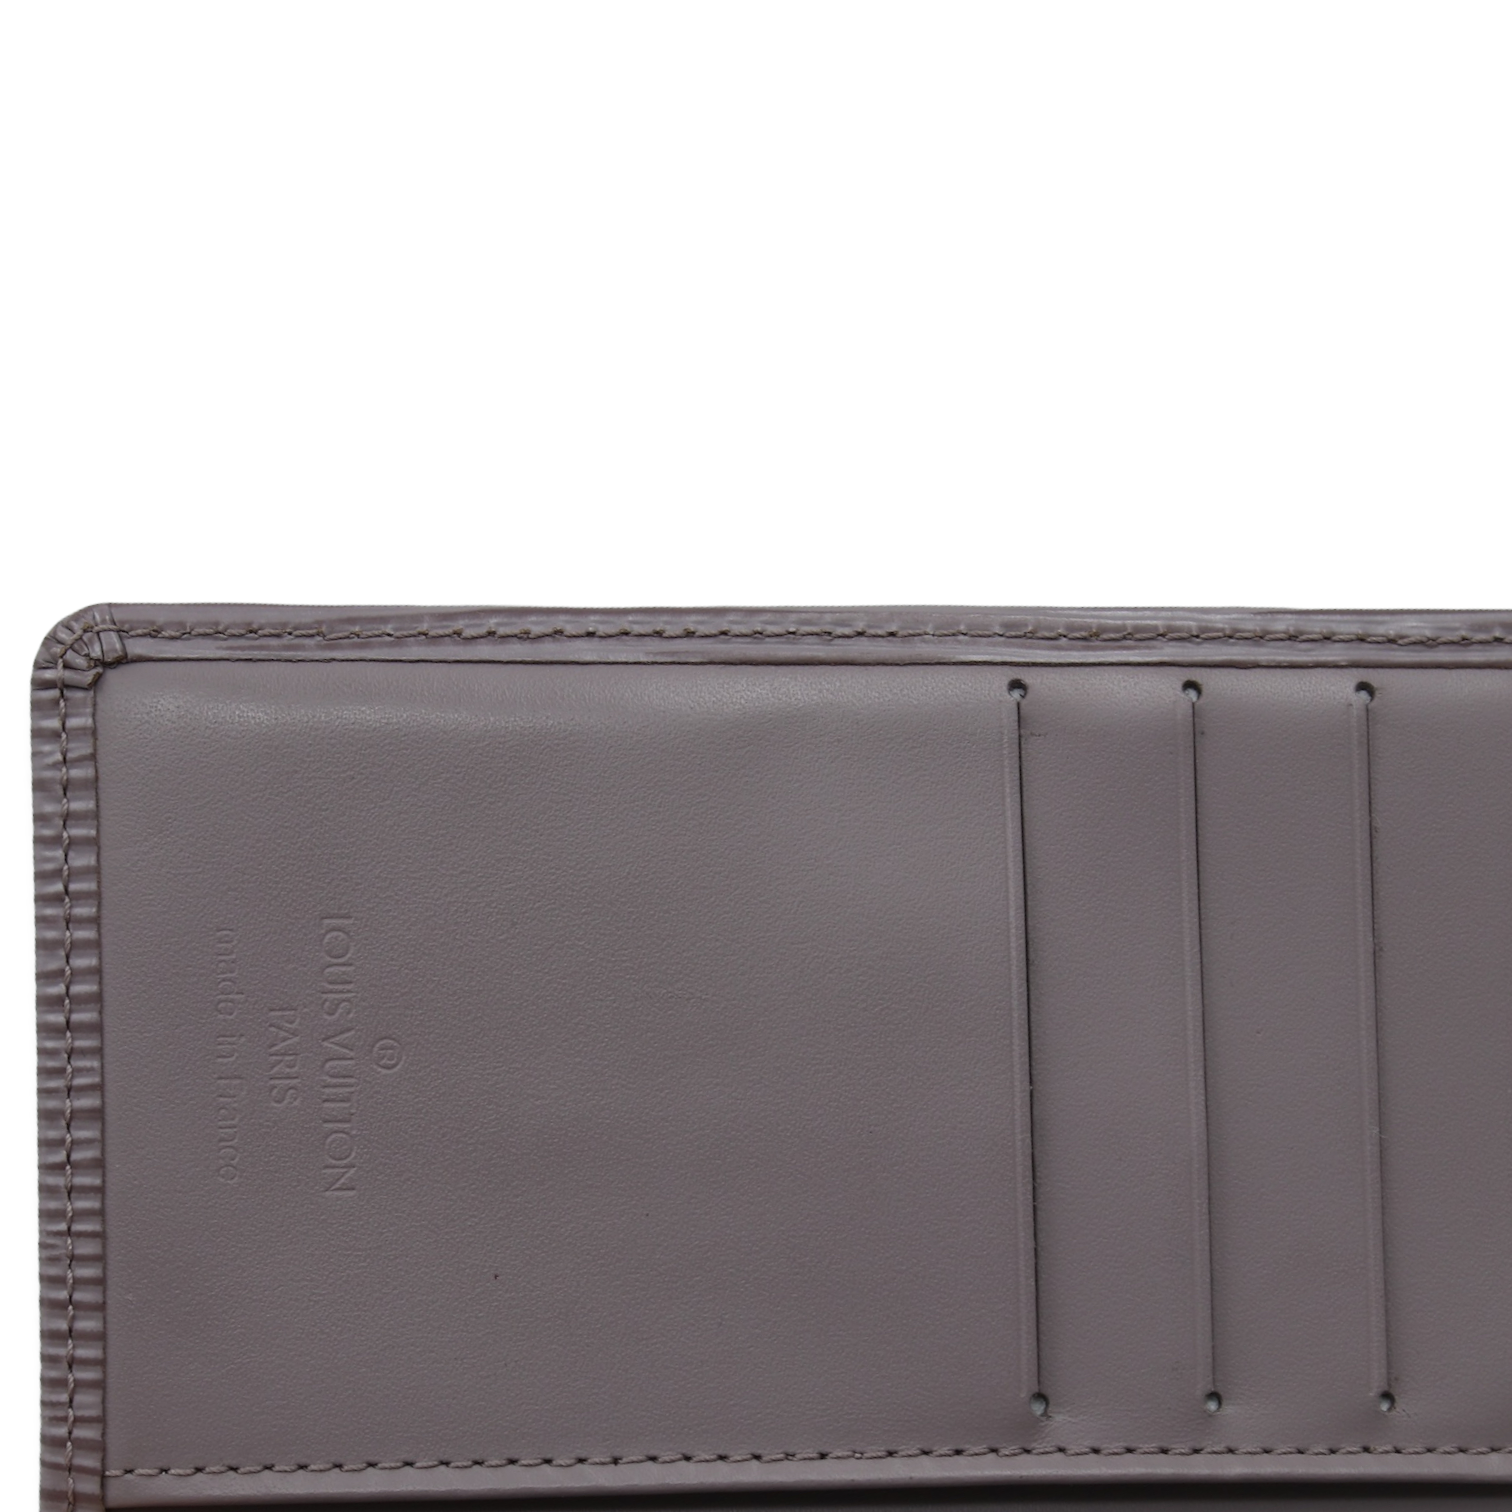 Louis Vuitton light lavender portefeuille viennois wallet – My Girlfriend's  Wardrobe LLC